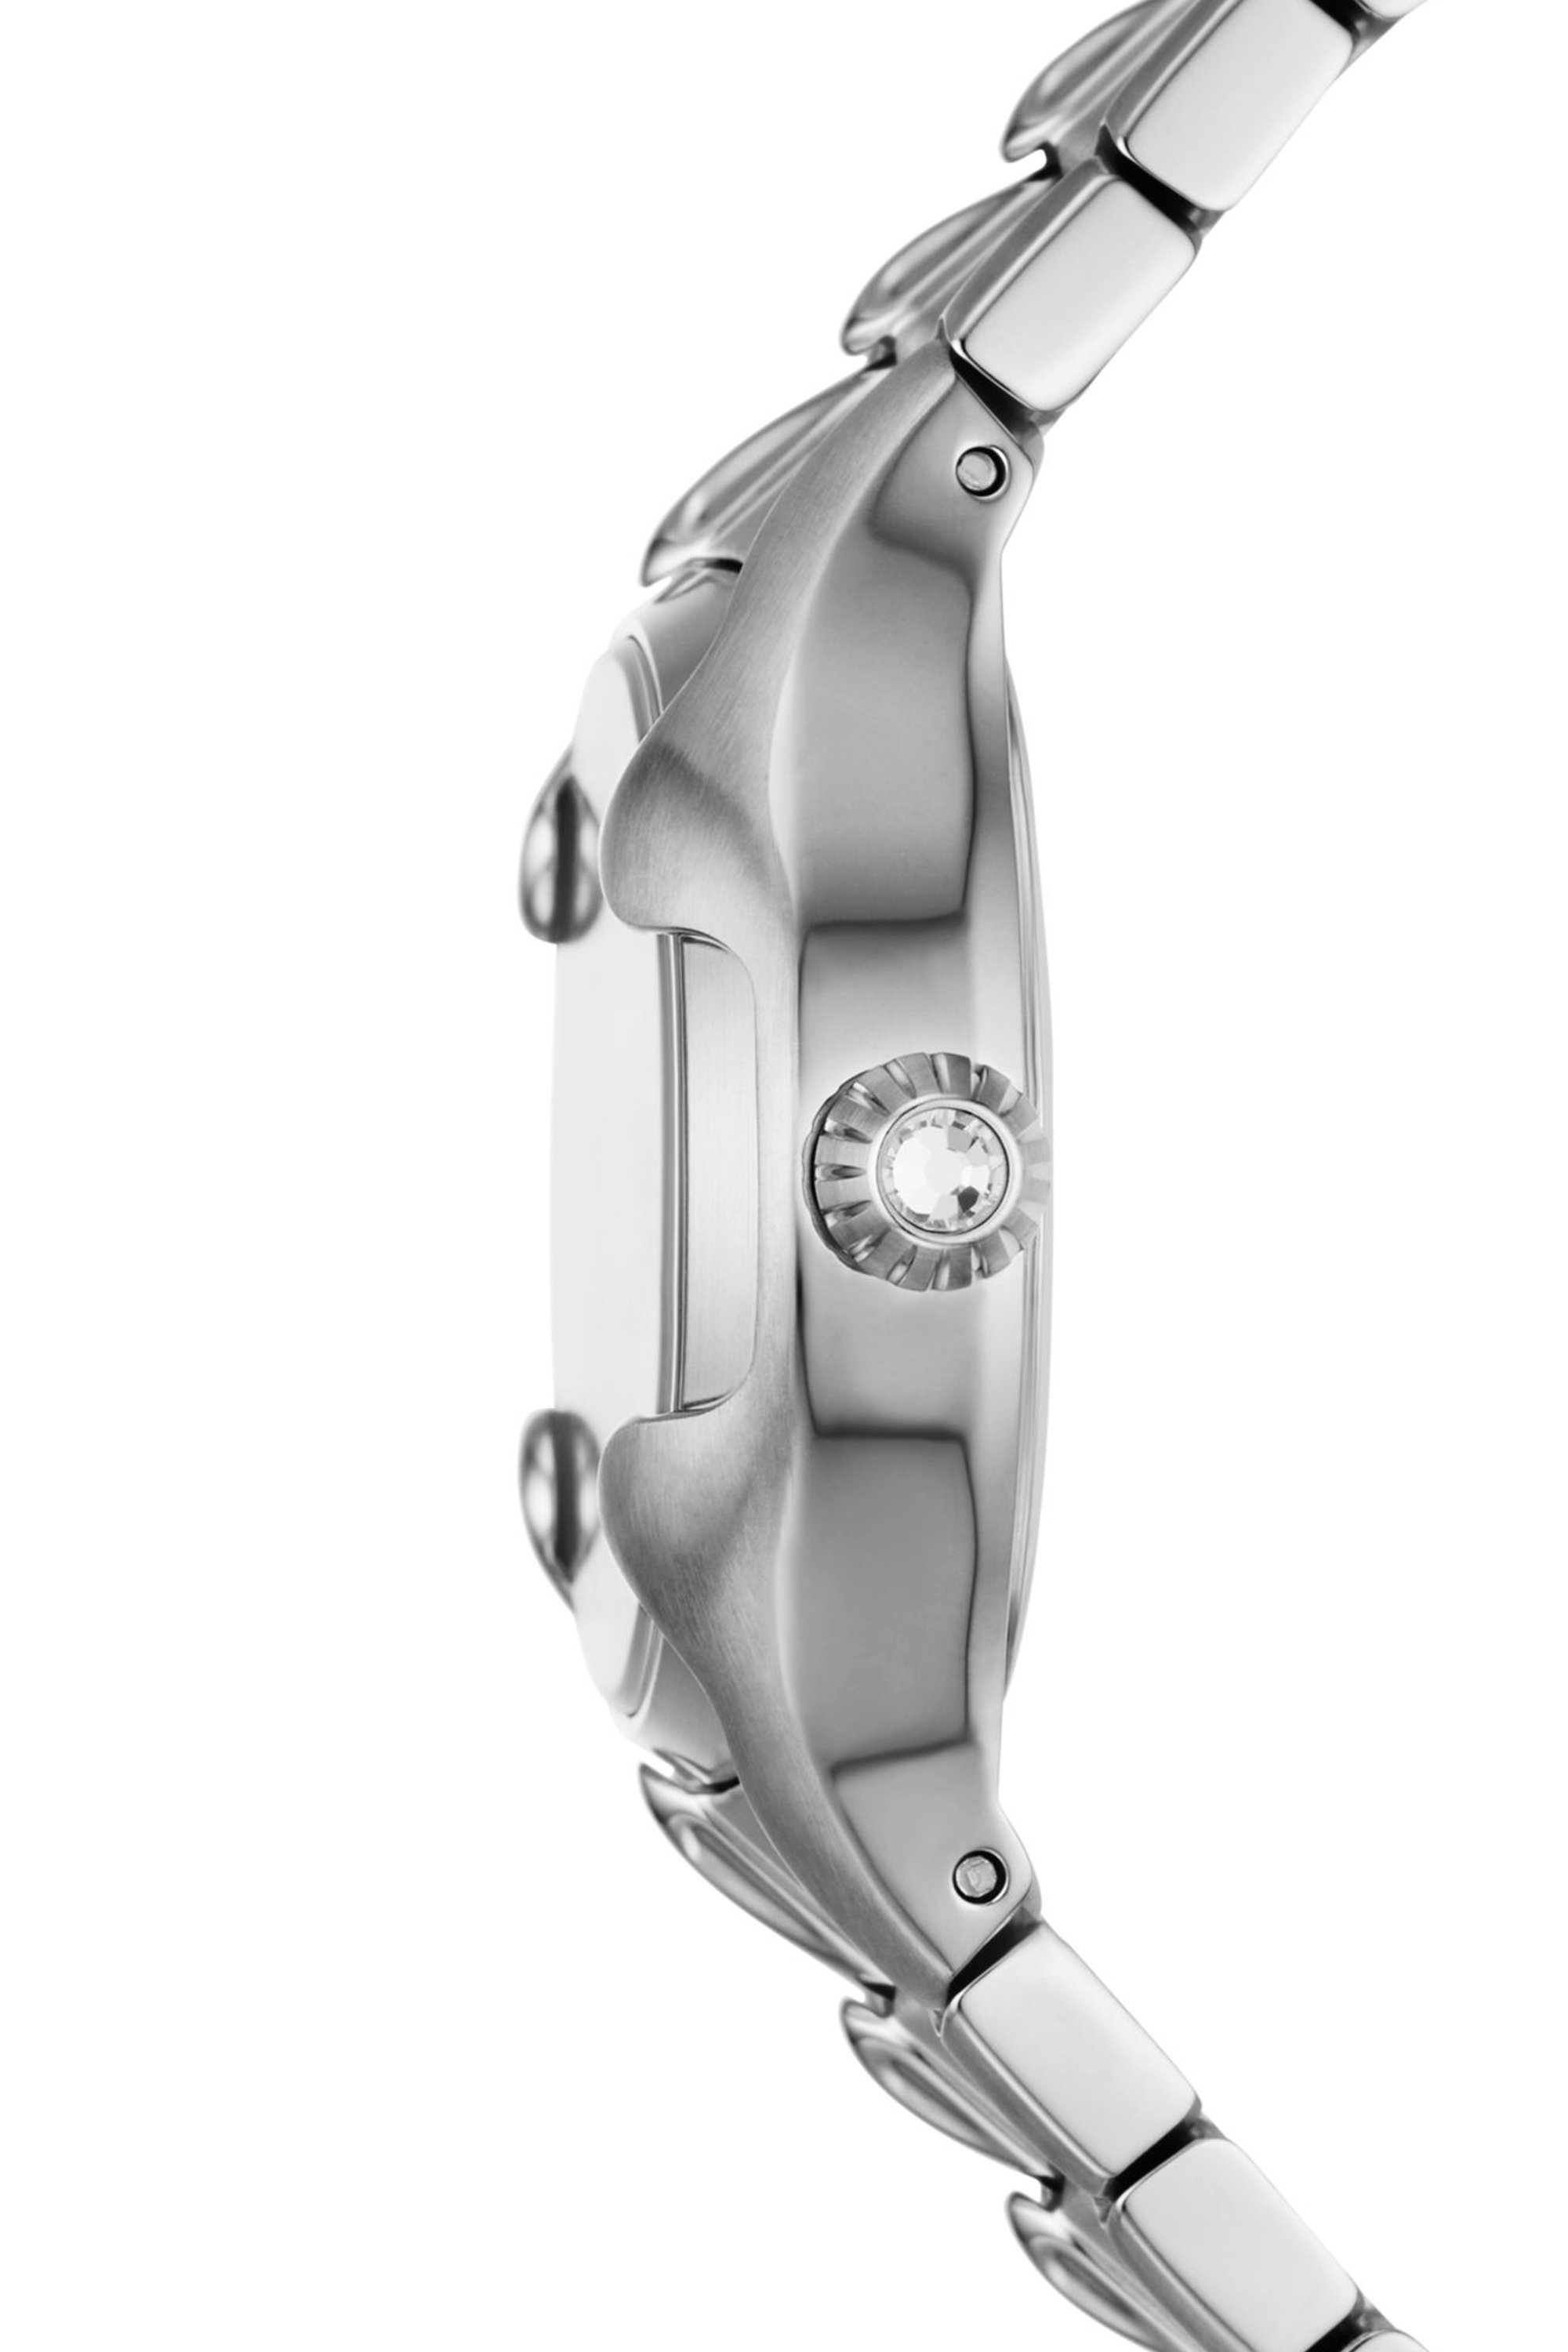 Diesel - DZ5605, Damen Vert Armbanduhr aus Edelstahl mit drei Zeigern in Silber - Image 4